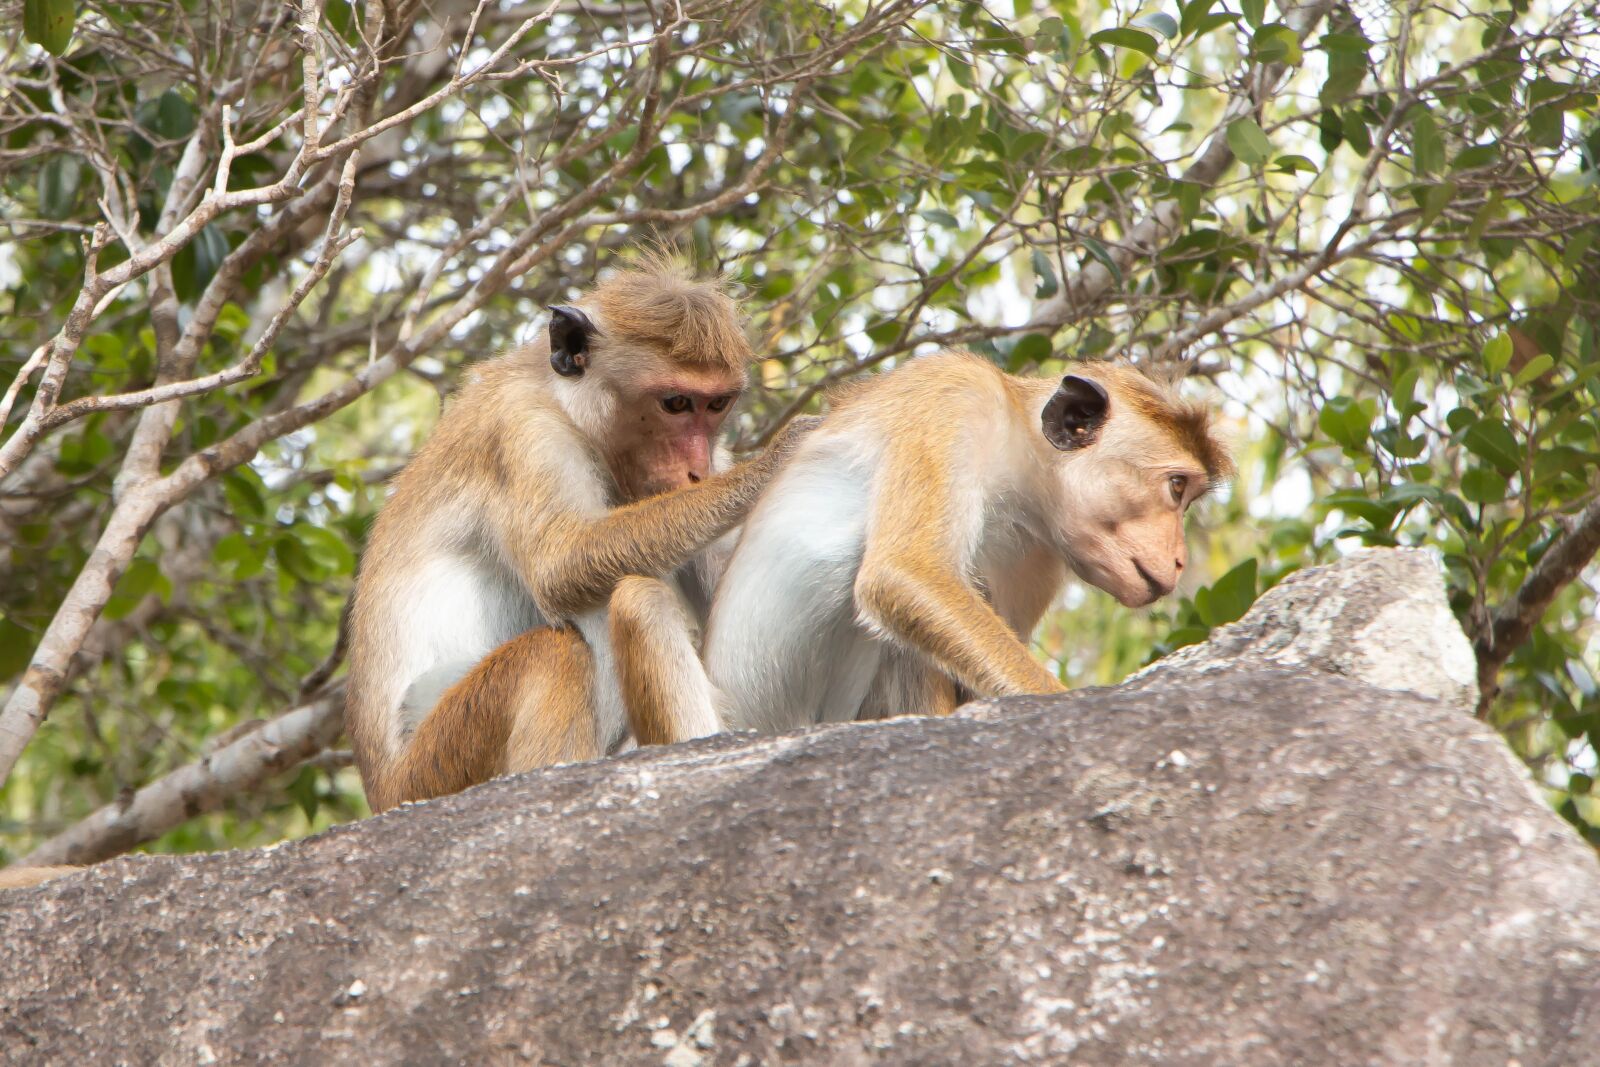 Canon EOS 70D sample photo. "Toque macaque, monkey, animal" photography